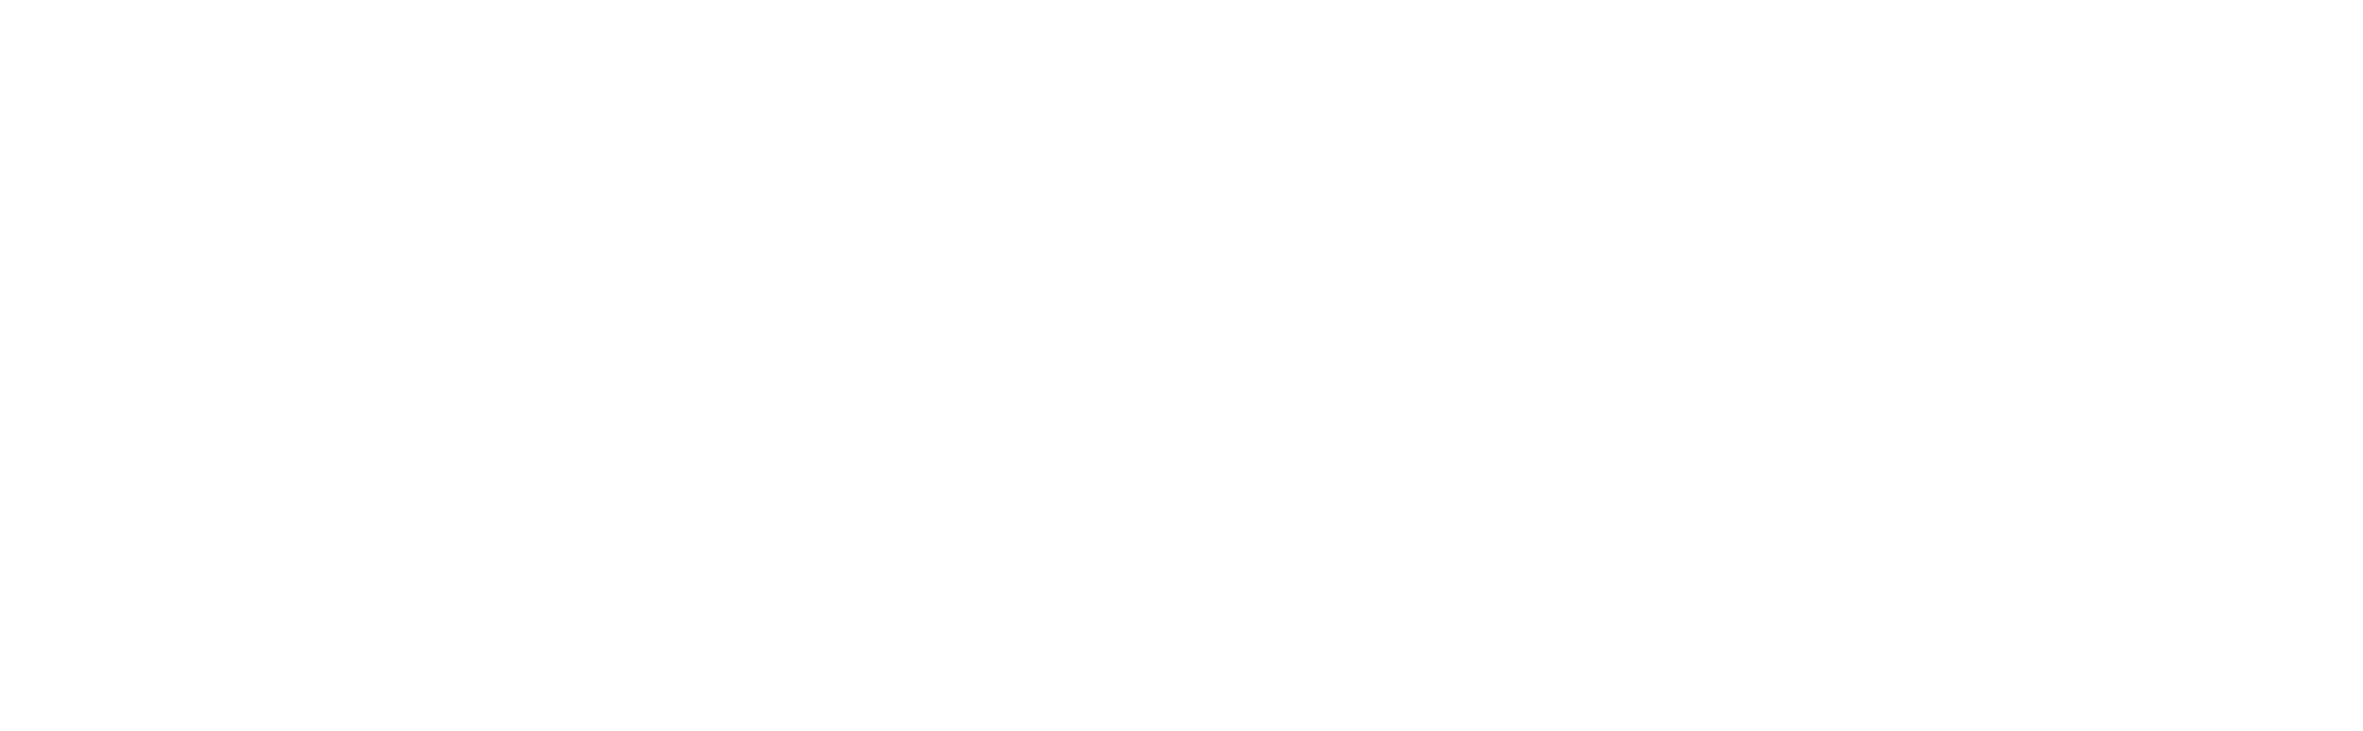 AECO Logo